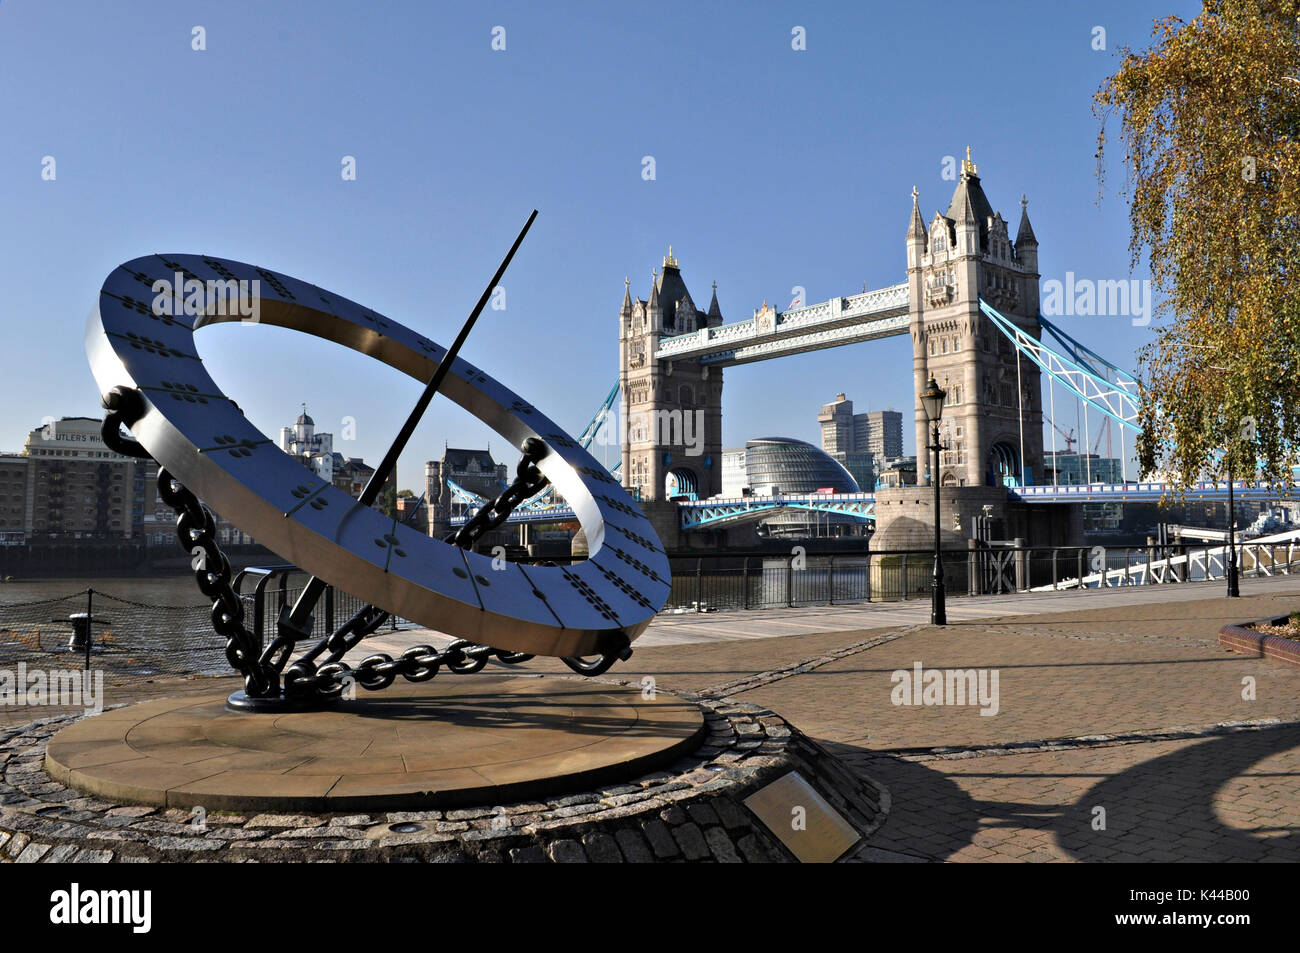 Die Tower Bridge und der Zeitmesser Skulptur, die eine Sonnenuhr, Wendy Taylor. Symbol der Stadt London, dieses Denkmal noch nie enttäuscht, mit seiner neo-gotische Türme und Kabel zur Farbe Blau ist ein Spektakel. Stockfoto